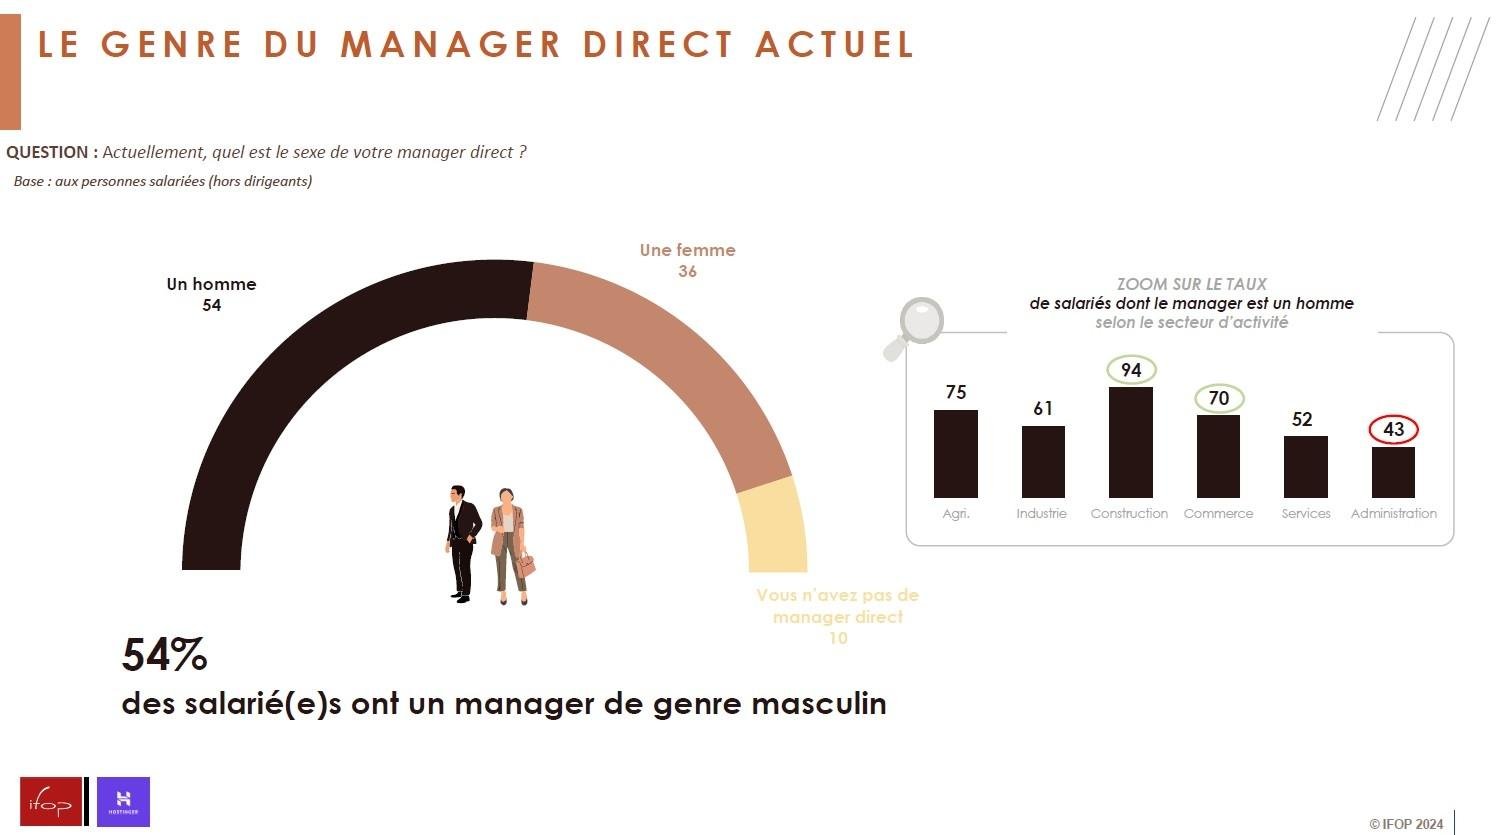 Infographie indiquant le genre du manager direct des répondants.